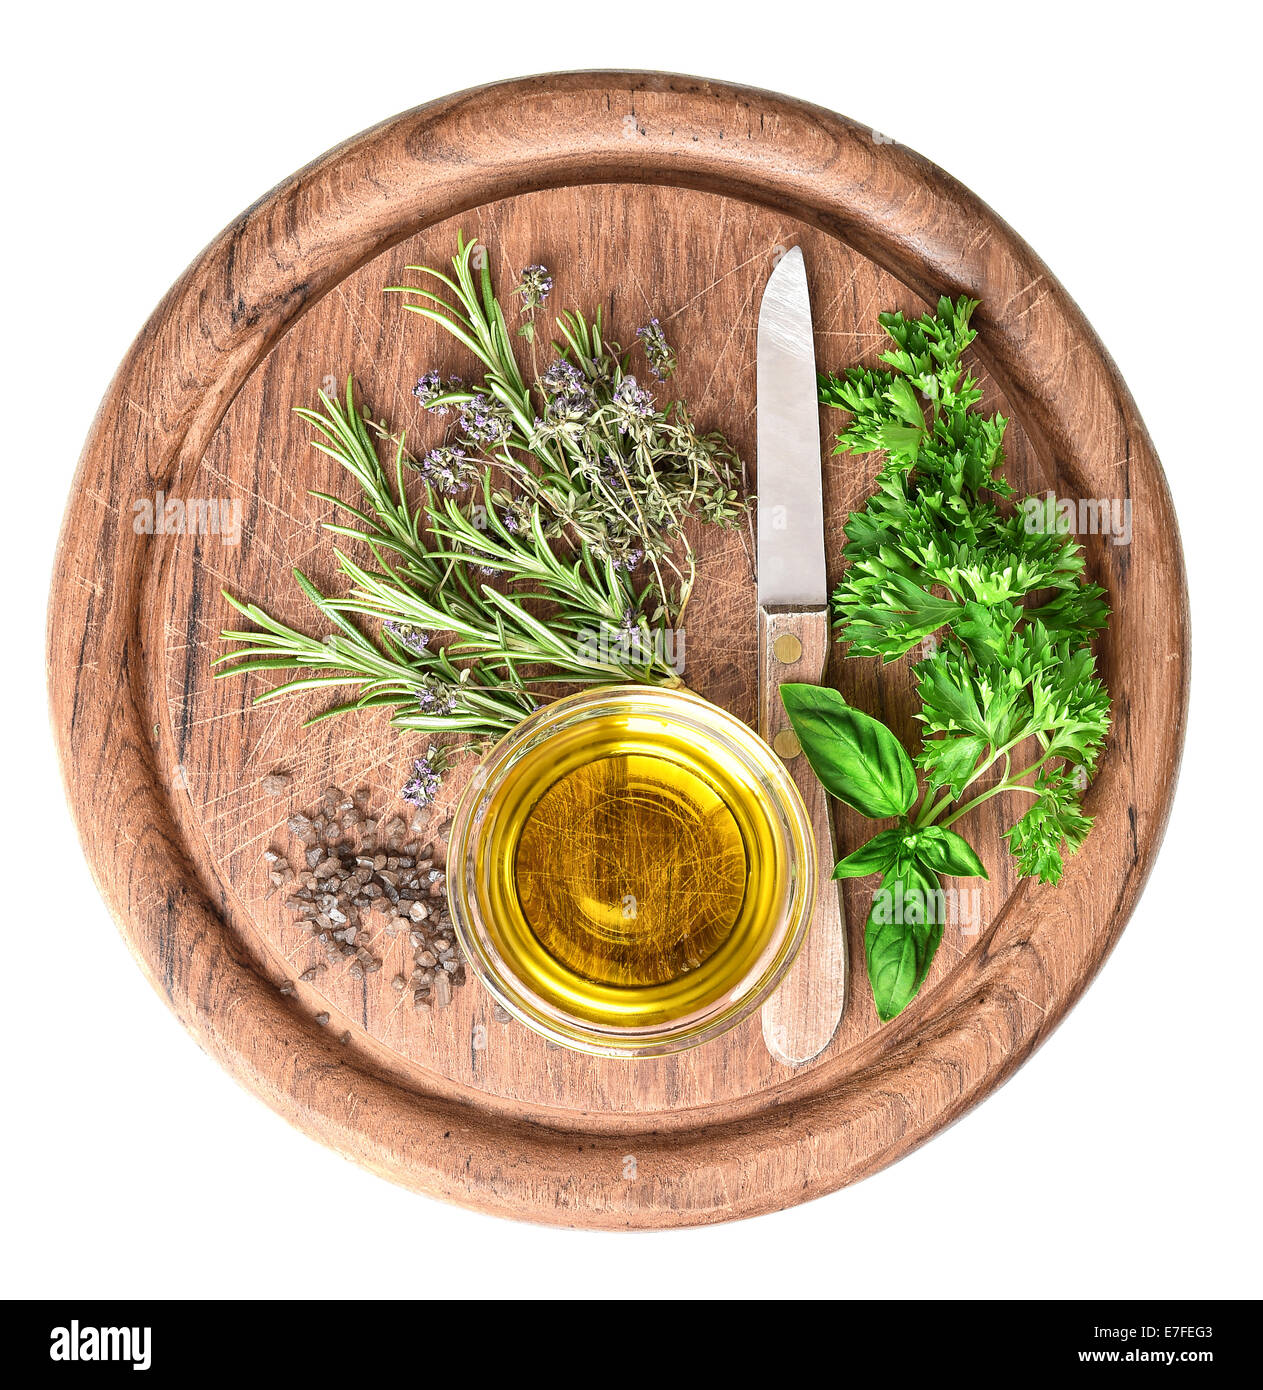 El aceite de oliva con hierbas frescas, tomillo, albahaca y romero sobre placa de cocina de madera Foto de stock